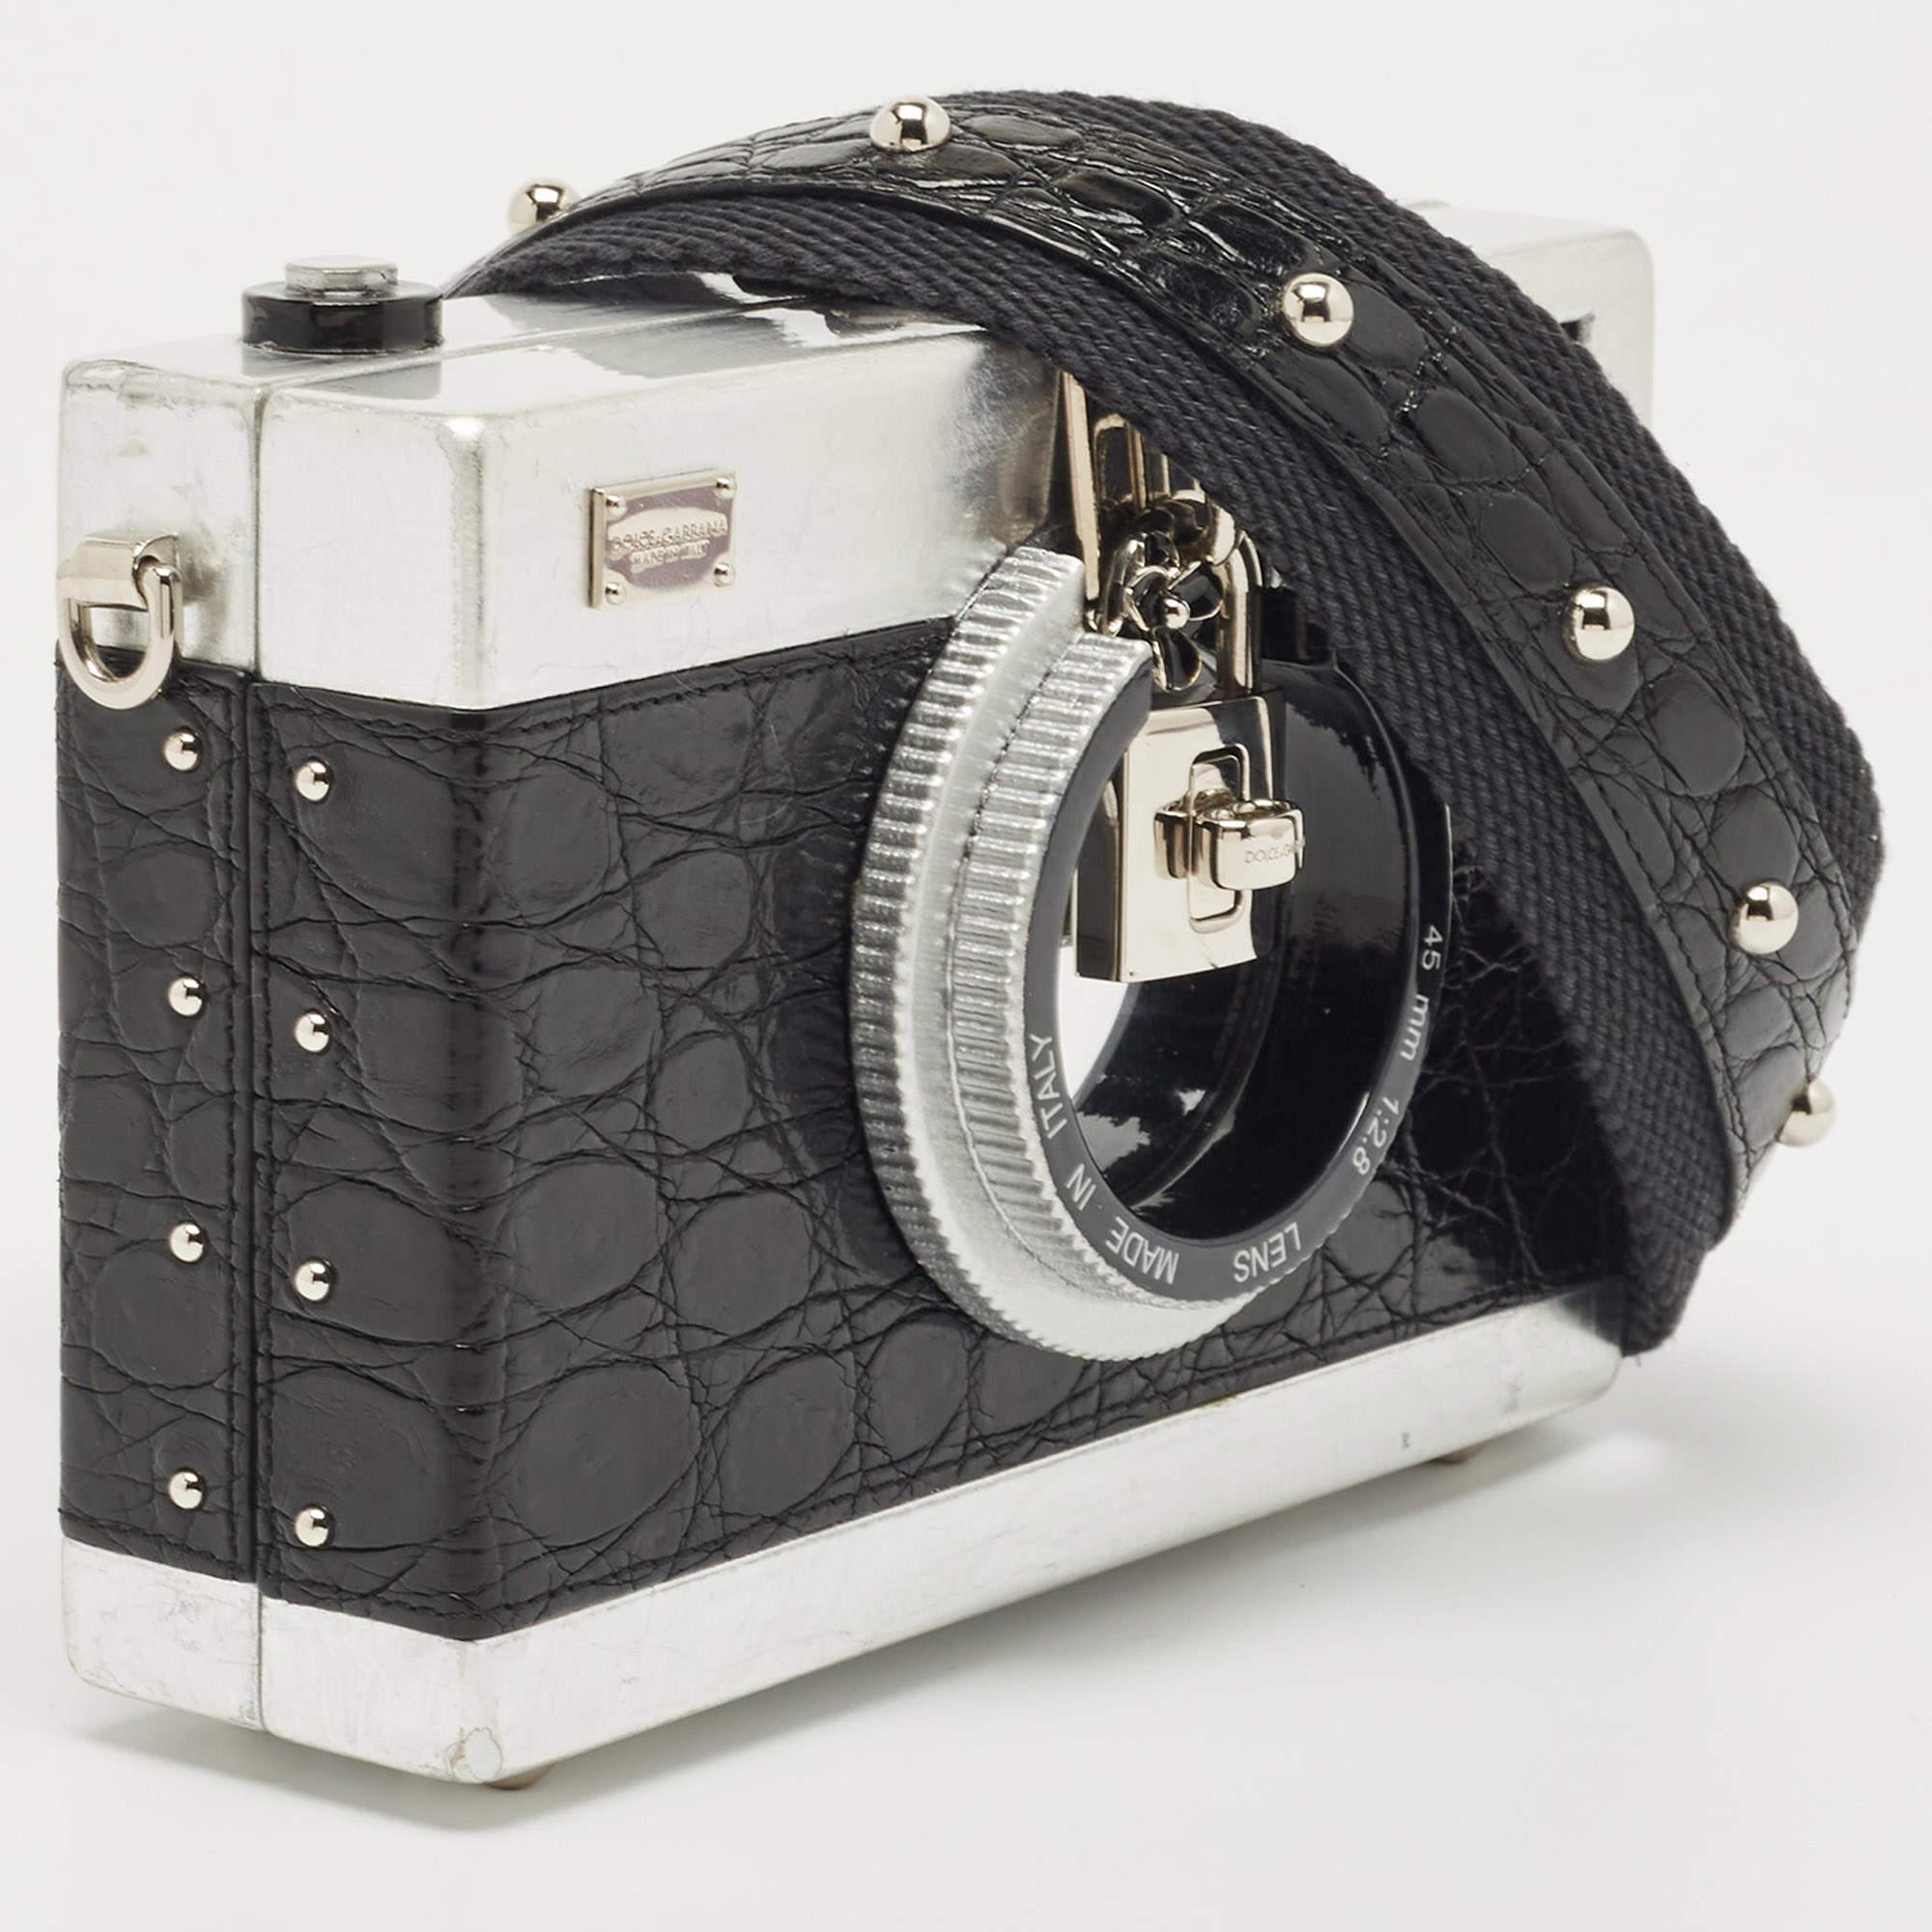 Dolce & Gabbana Black/Silver Croc Embossed and Leather Camera Case Shoulder Bag 6